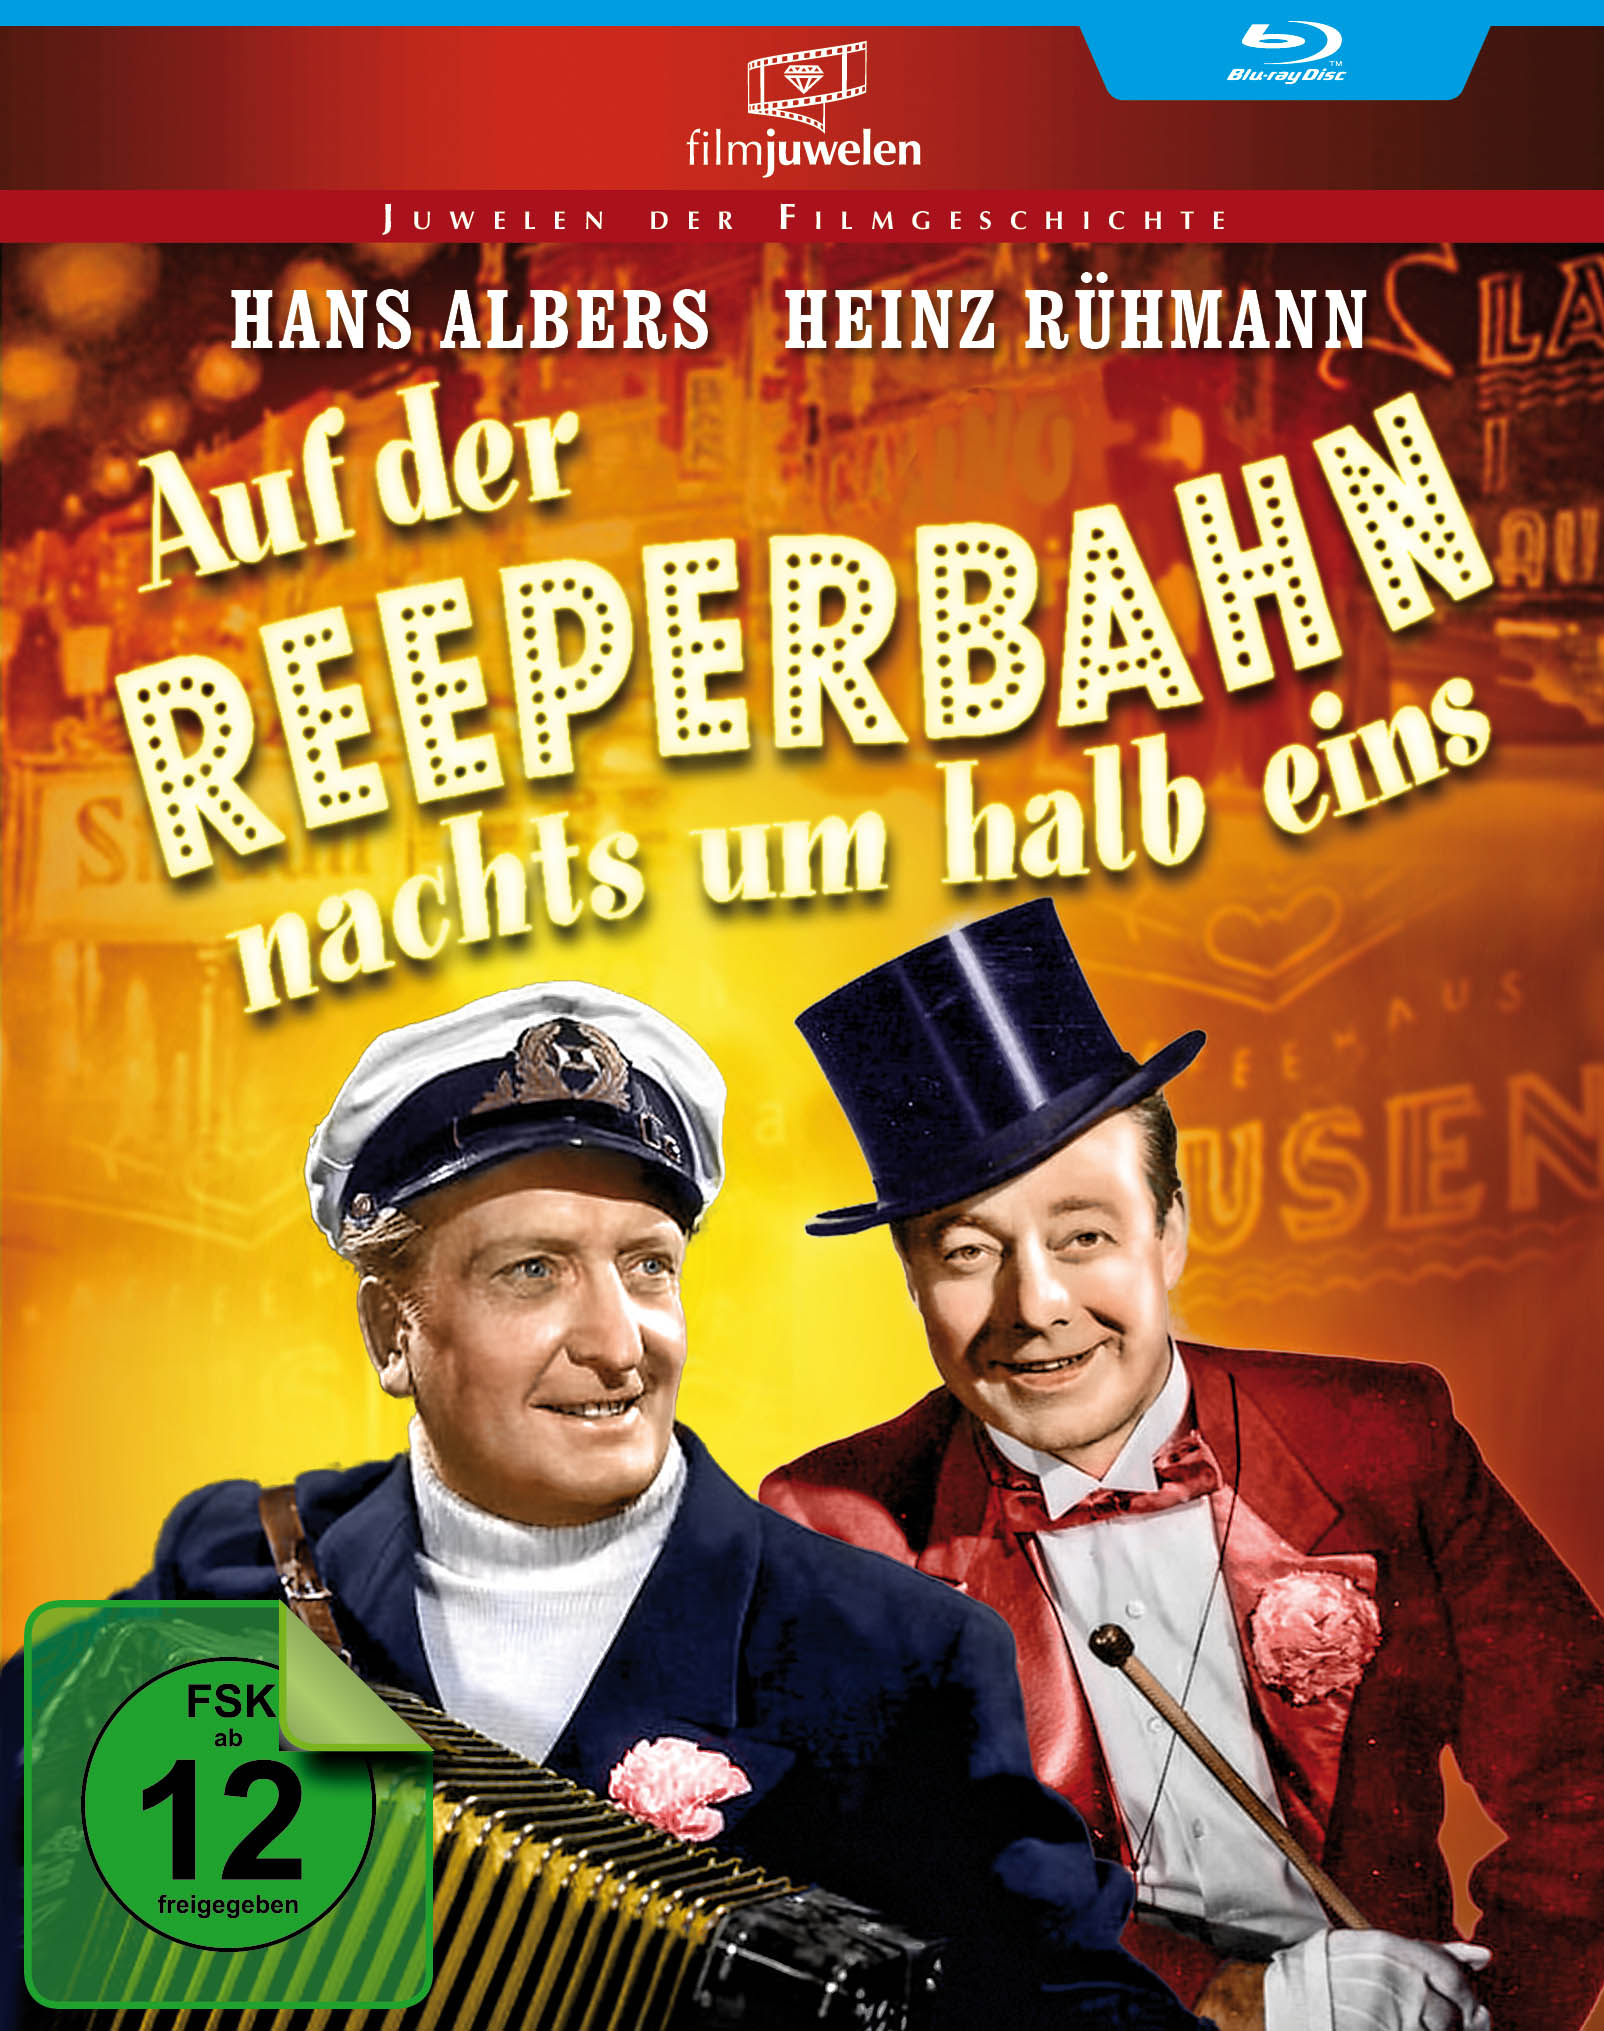 Heinz Rühmann Edition - Reeperbahn Auf um Blu-ray eins halb der nachts